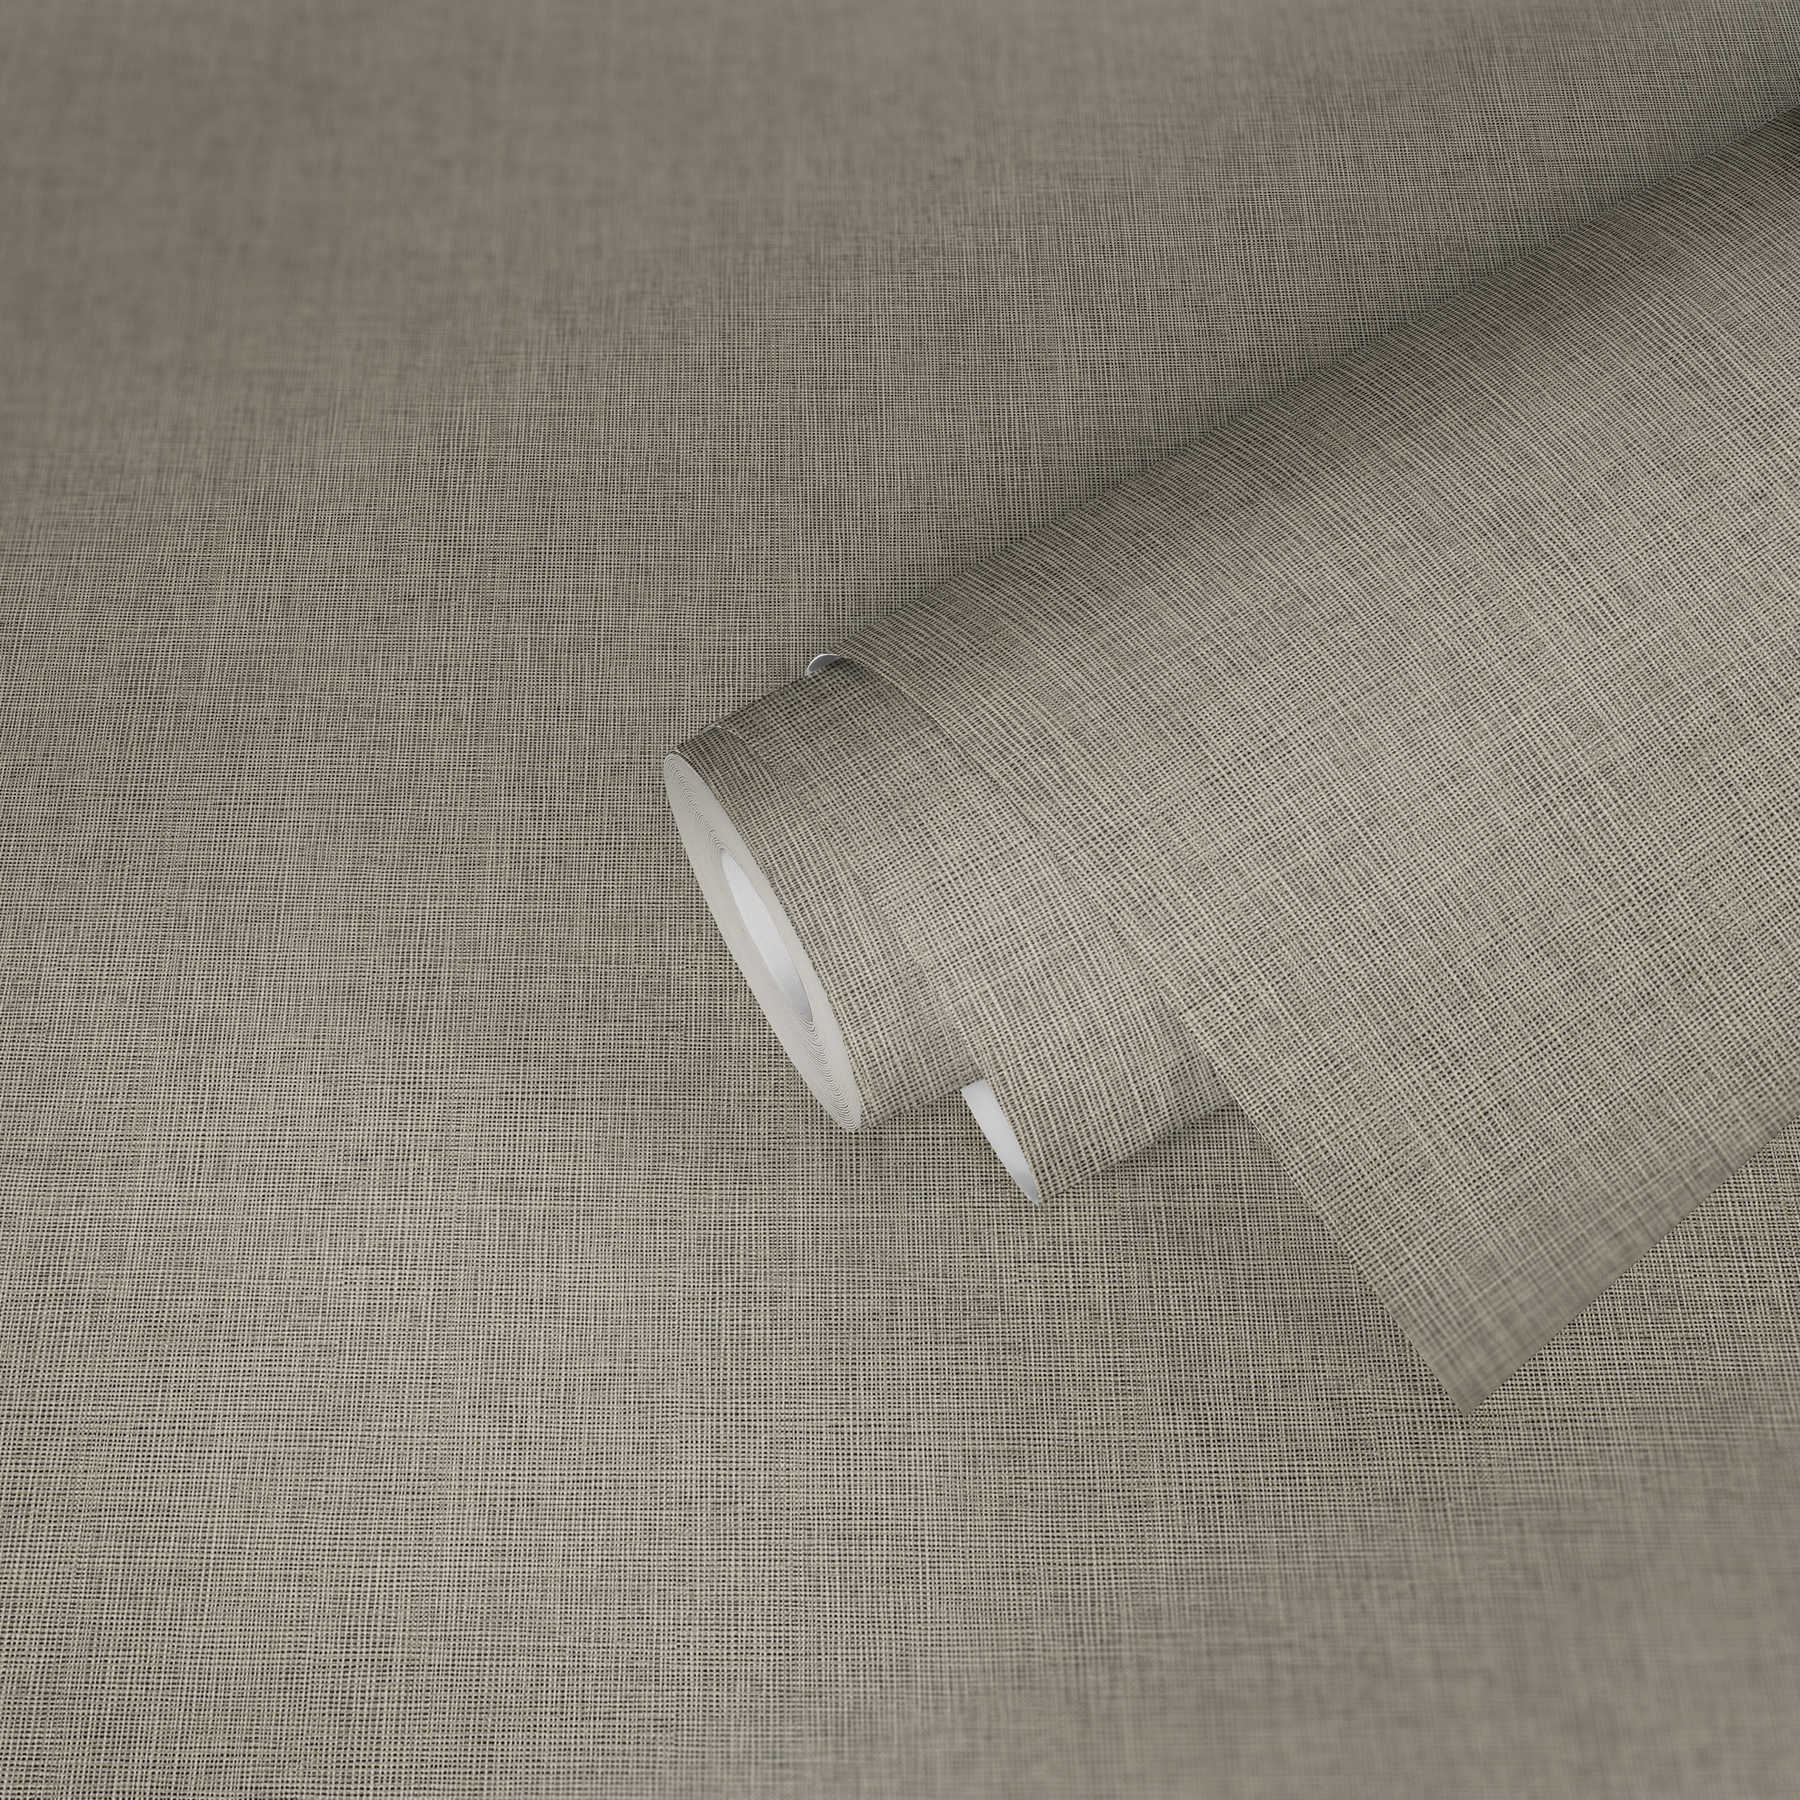             Papel pintado unitario de aspecto textil con detalles metálicos plateados - azul, gris, plata
        